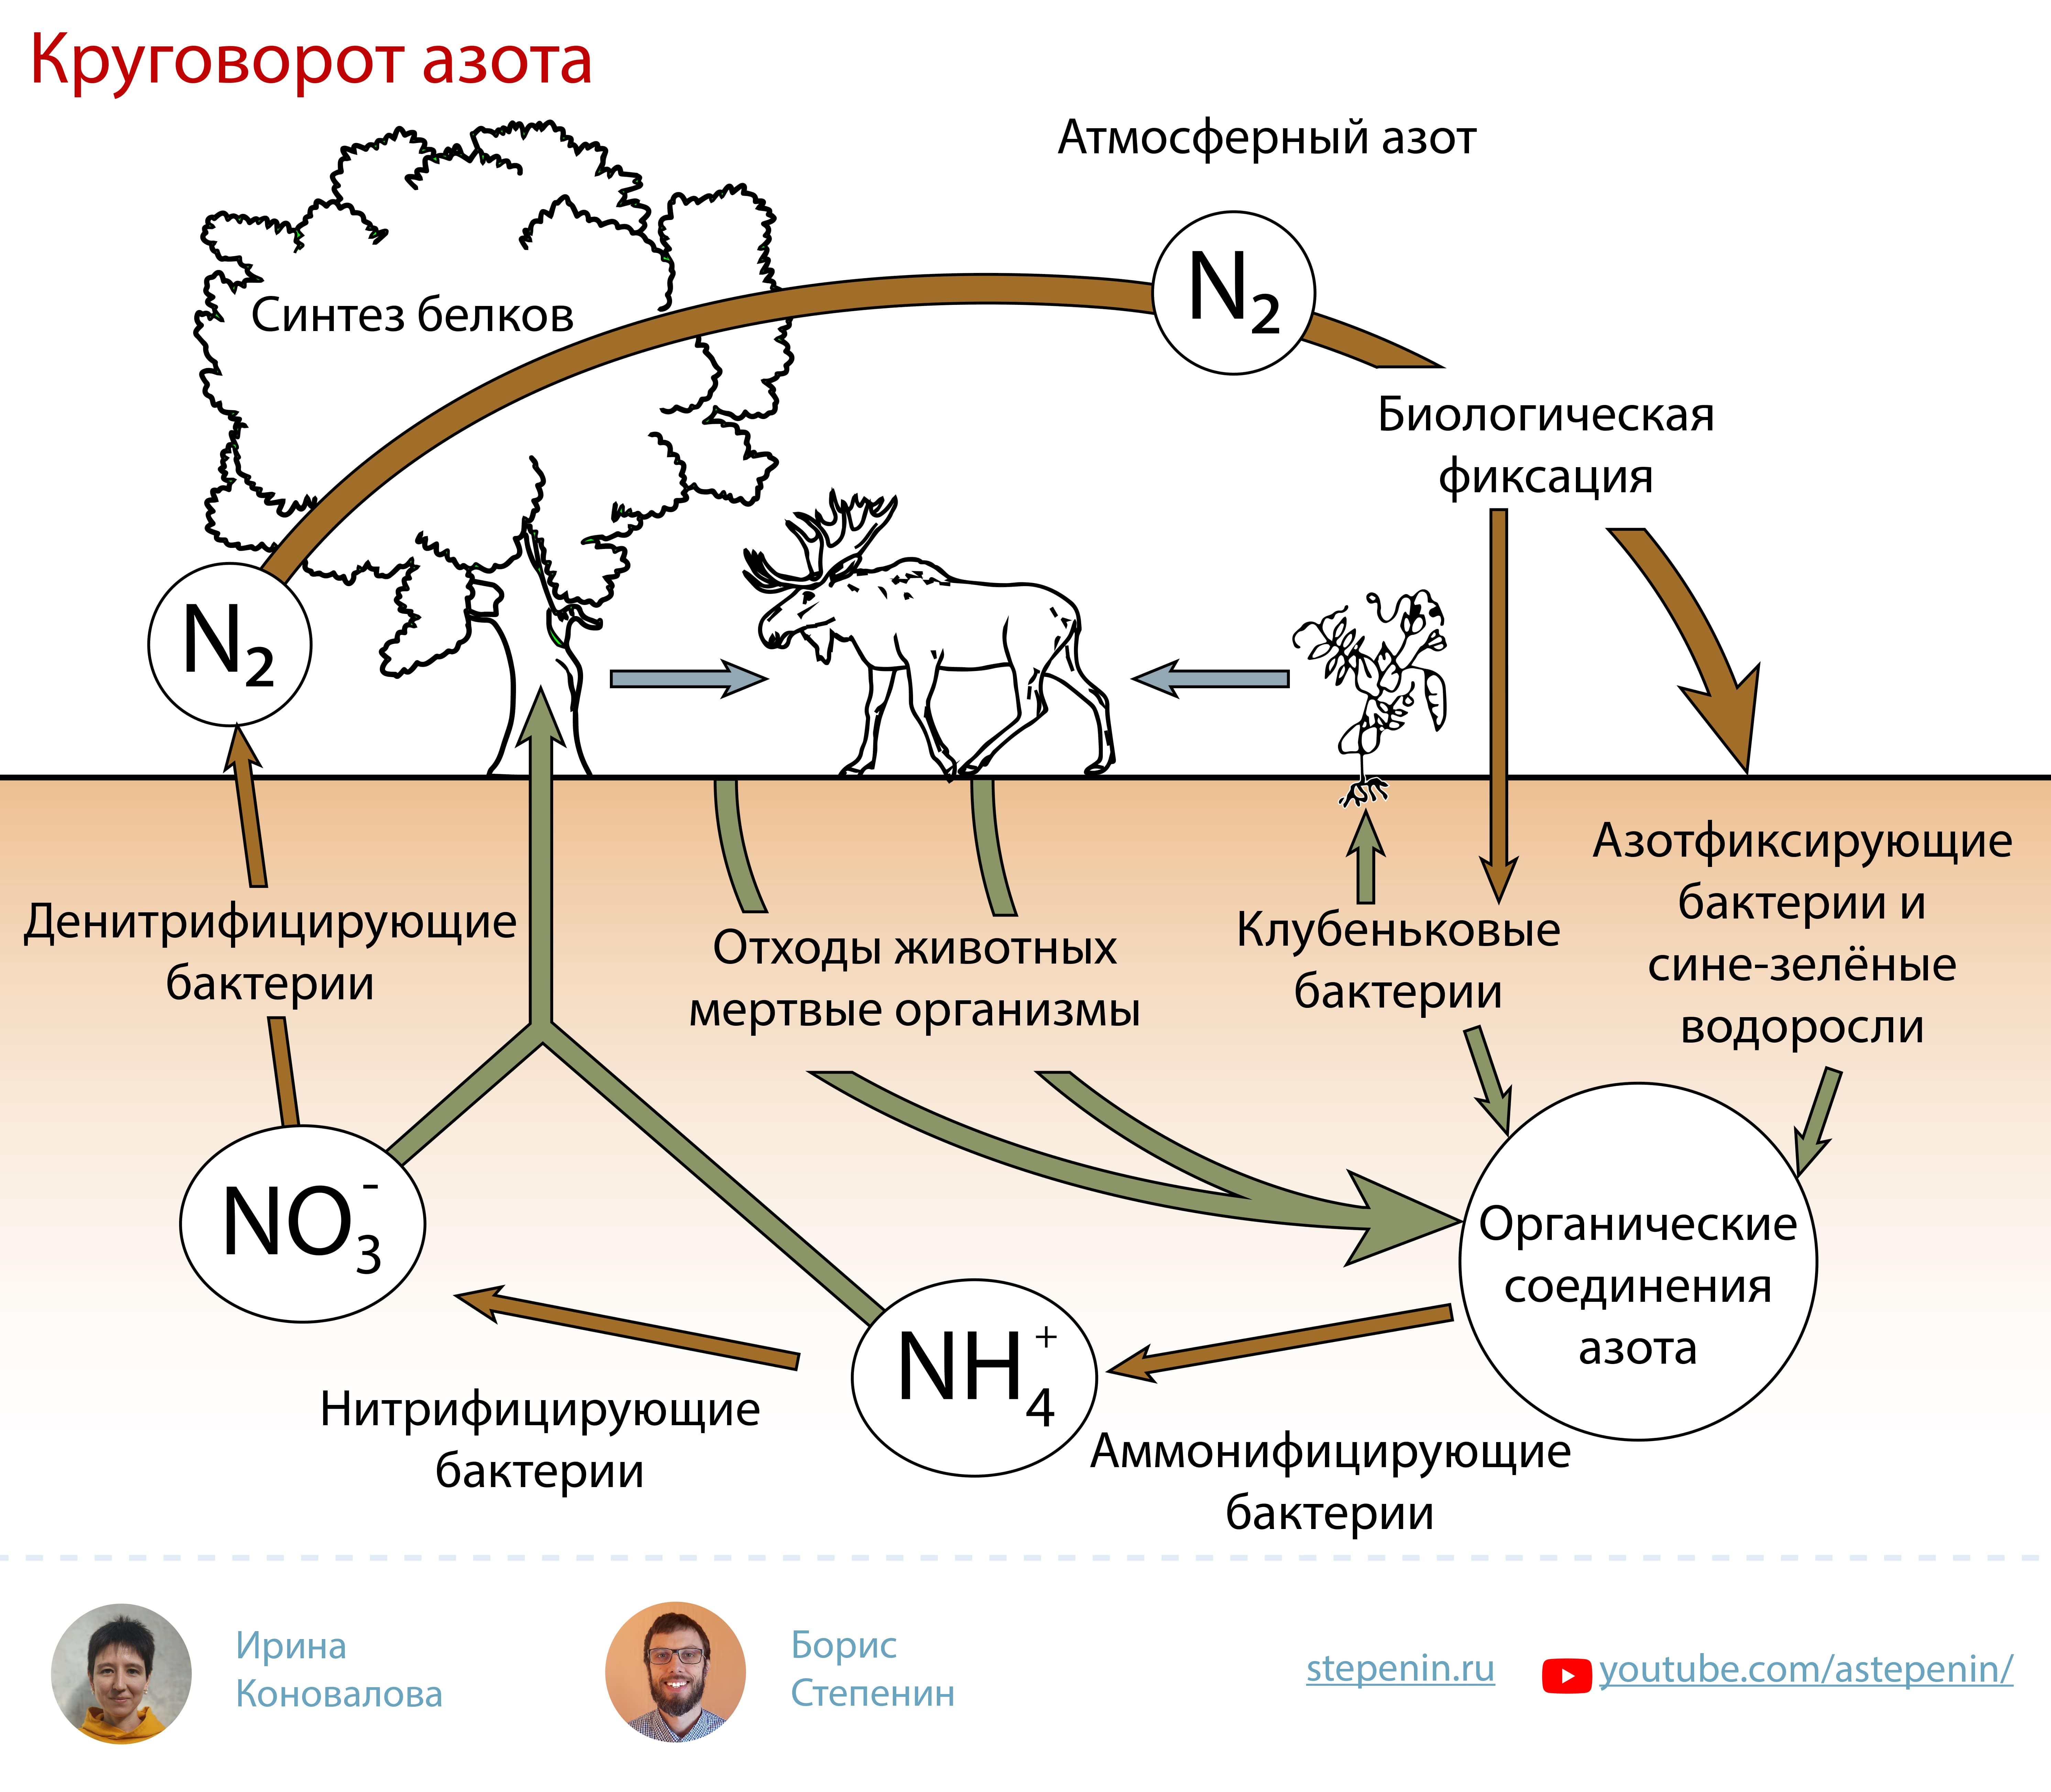 Азот в составе живых организмов. Биогеохимический цикл азота схема. Биологическая роль азота круговорот. Атмосферный азот круговорот веществ. Круговороттазота в природе.